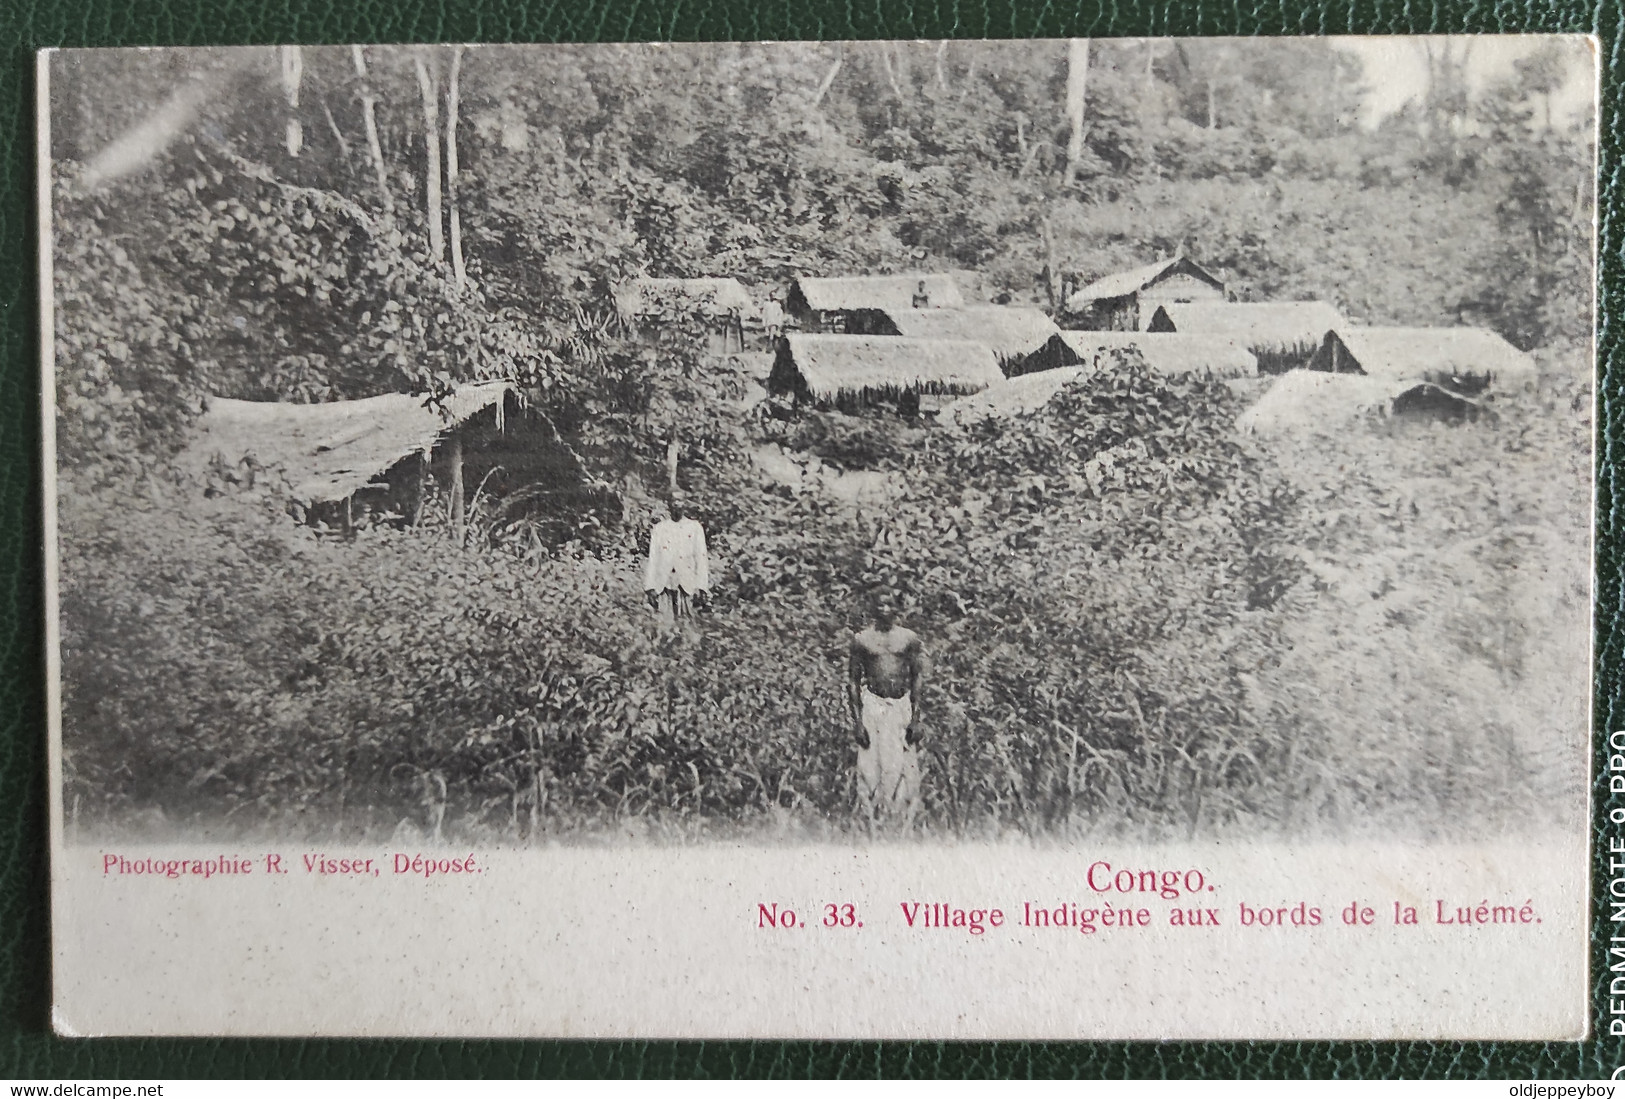 POSTCARD 1904 OLD POSTCARD PHOTOGRAPHIE R.VISSER, DÉPOSE CONGO.VILLAGE INDIGENE AUX BORDS DE LA LUEME  Nº33 - French Congo